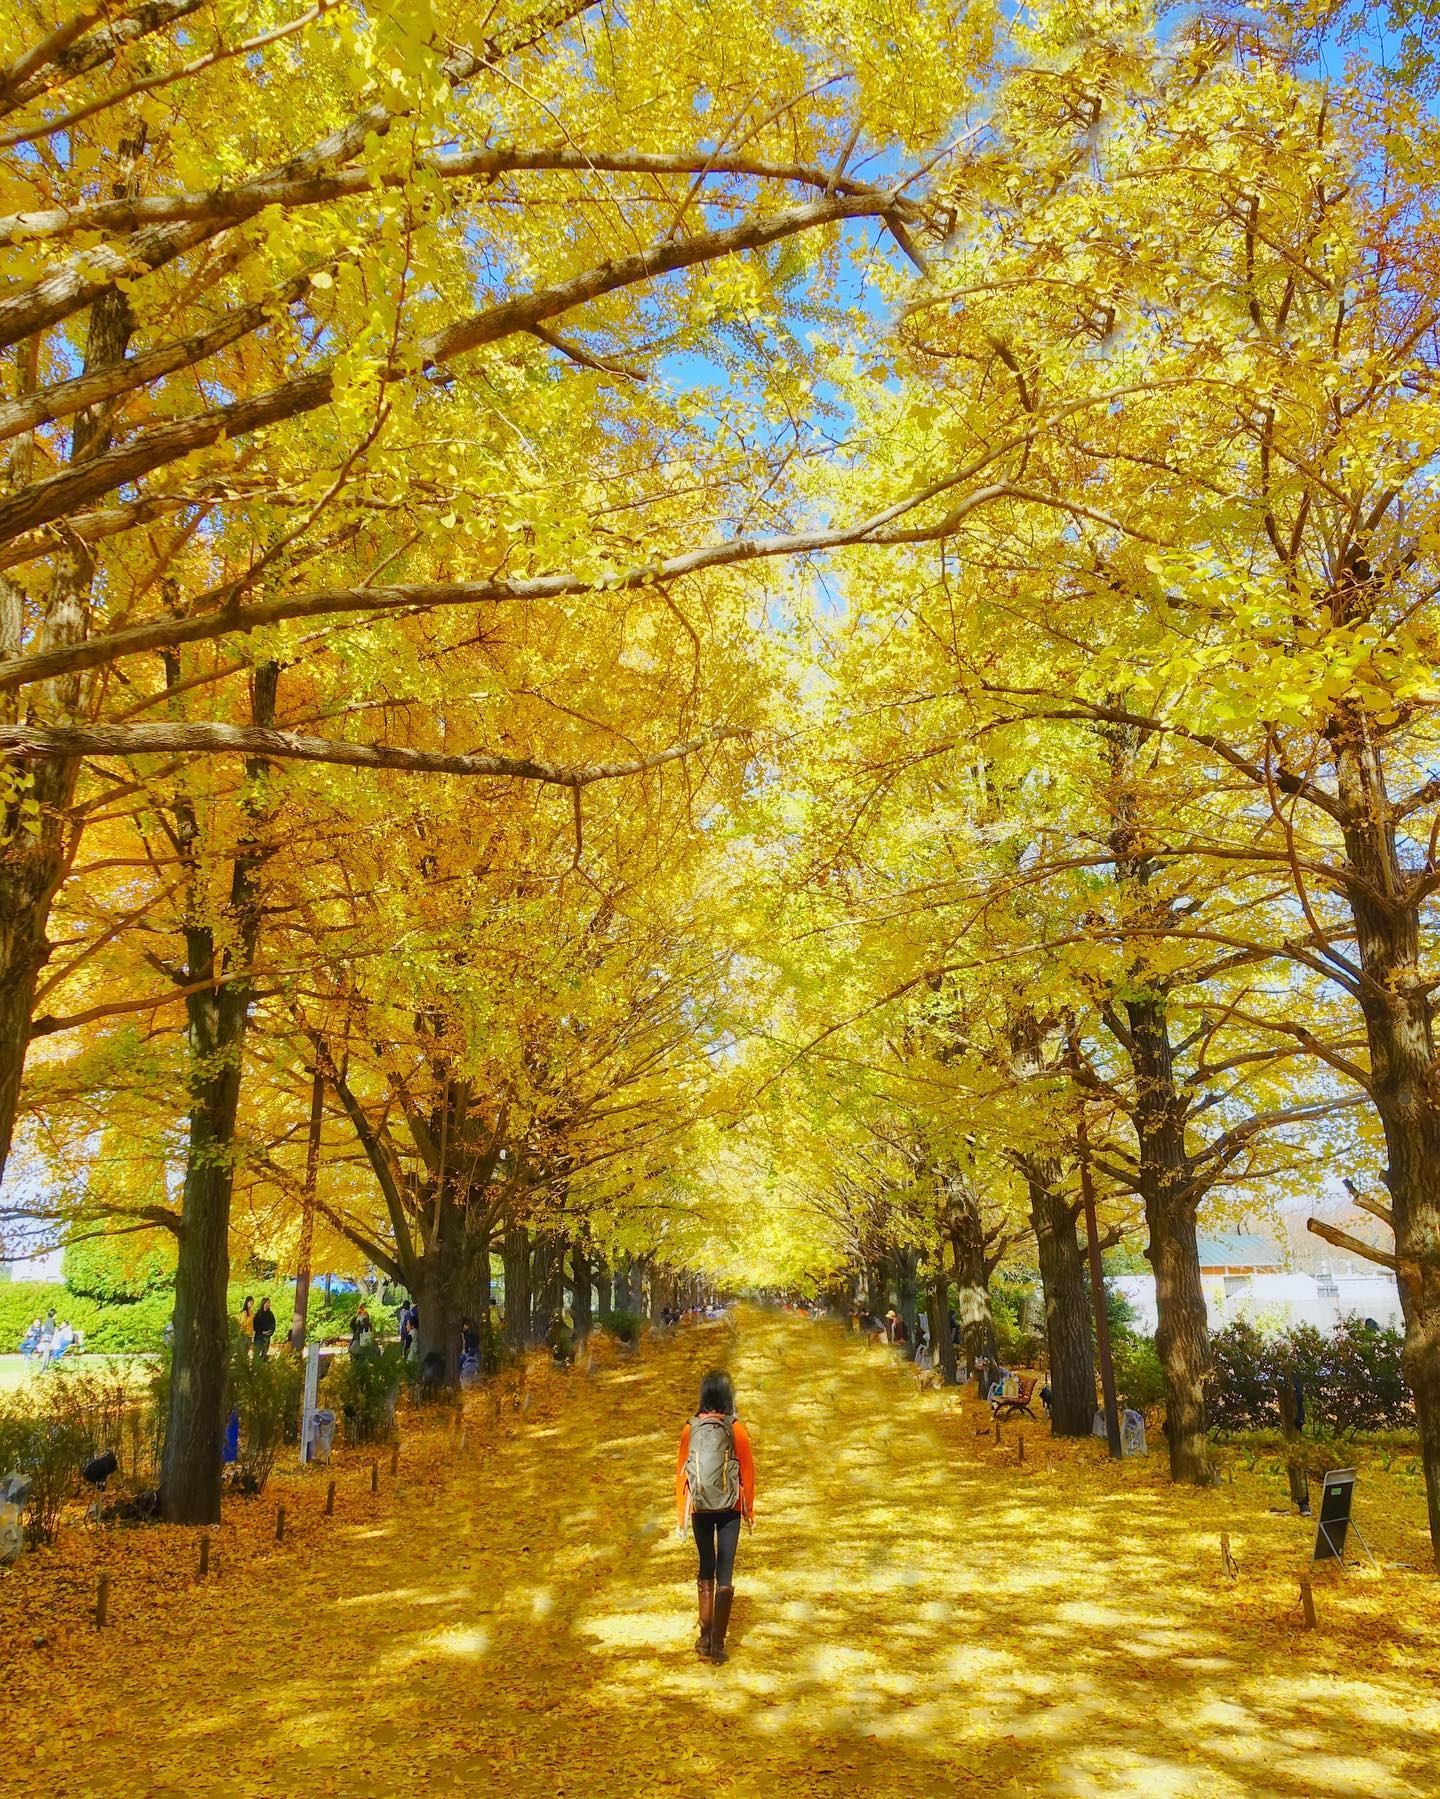 🇯🇵【東京 Tokyo】昭和紀念公園 Showa Kinen Park
🍁東京首選銀杏名所之一的昭和公園，秋季主打『銀杏隧道』，搭配藍天，走在金黃包圍的步道上非常夢幻，圖文昭島口旁
🏮著名「日本庭園」湖畔紅葉，與廣大園區中的紅衫，榉樹等豐富景觀也都不容錯過，推薦結合野餐，划船，騎車或各種休閒活動#東京観光 #昭和紀念公園 #國營昭和紀念公園 #賞楓 #銀杏#tokyo #showakinenpark #travelwithmikeanna #把世界當教室🌍 #日本秋季絕景